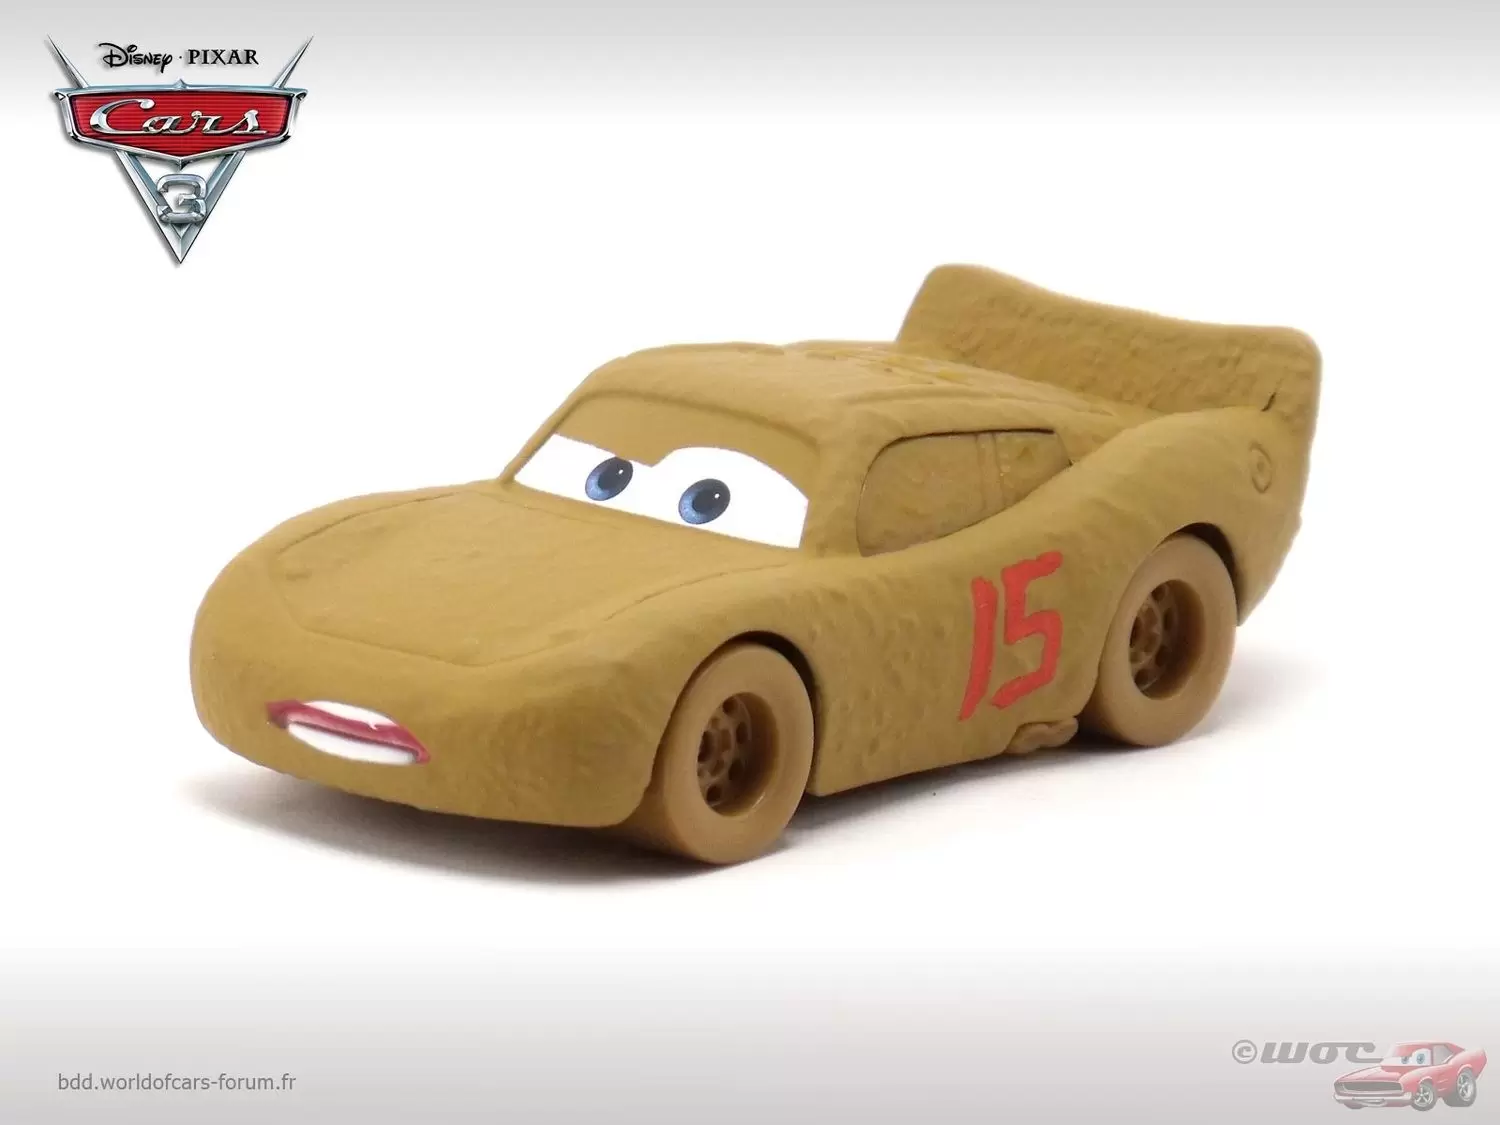 Cars 3 - Lightning McQueen as Chester Whipplefilter & Circuit Thunder Hollow